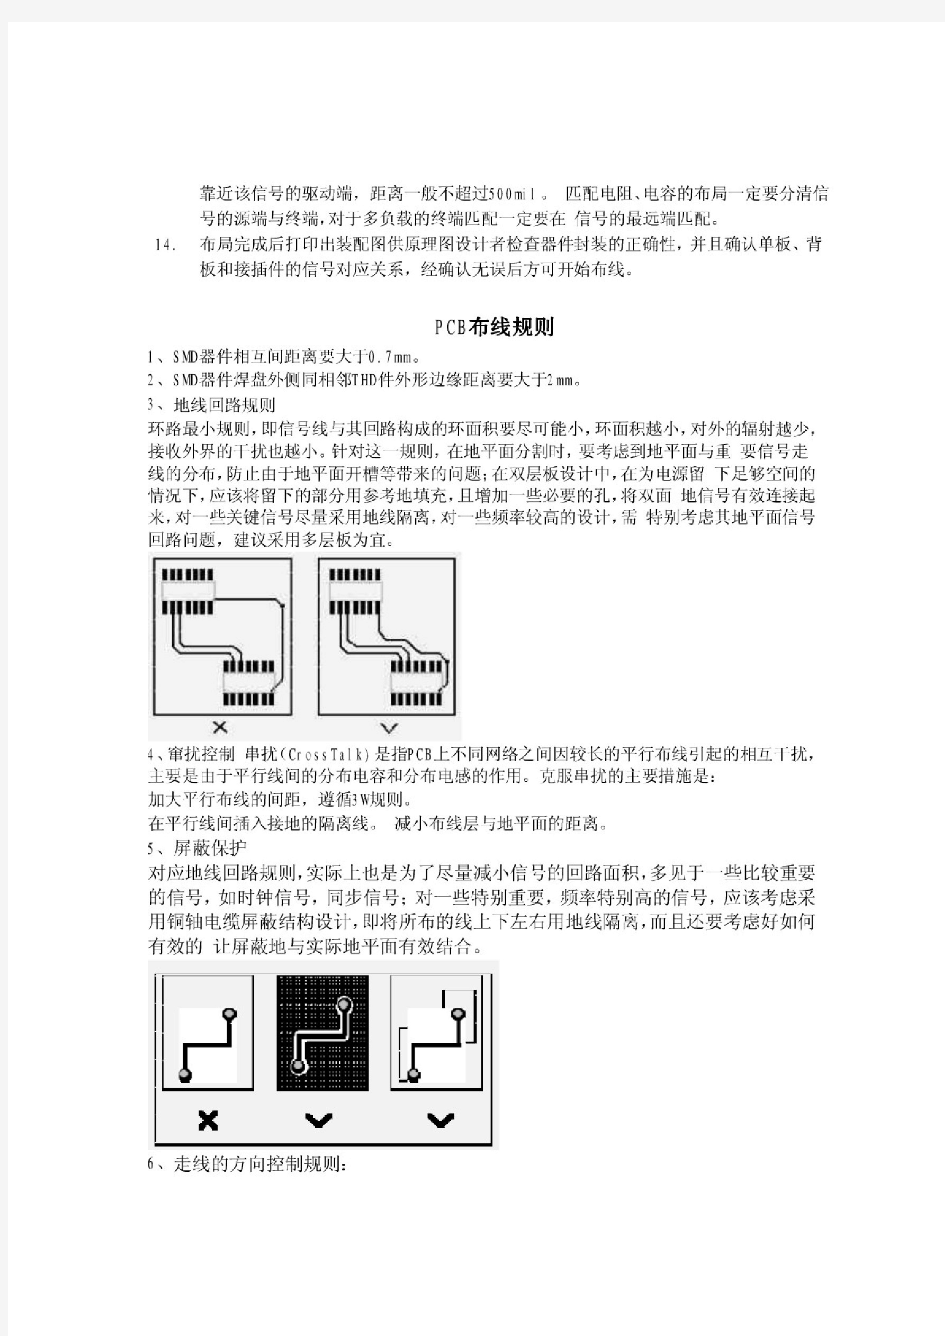 PCB设计布局及布线规则